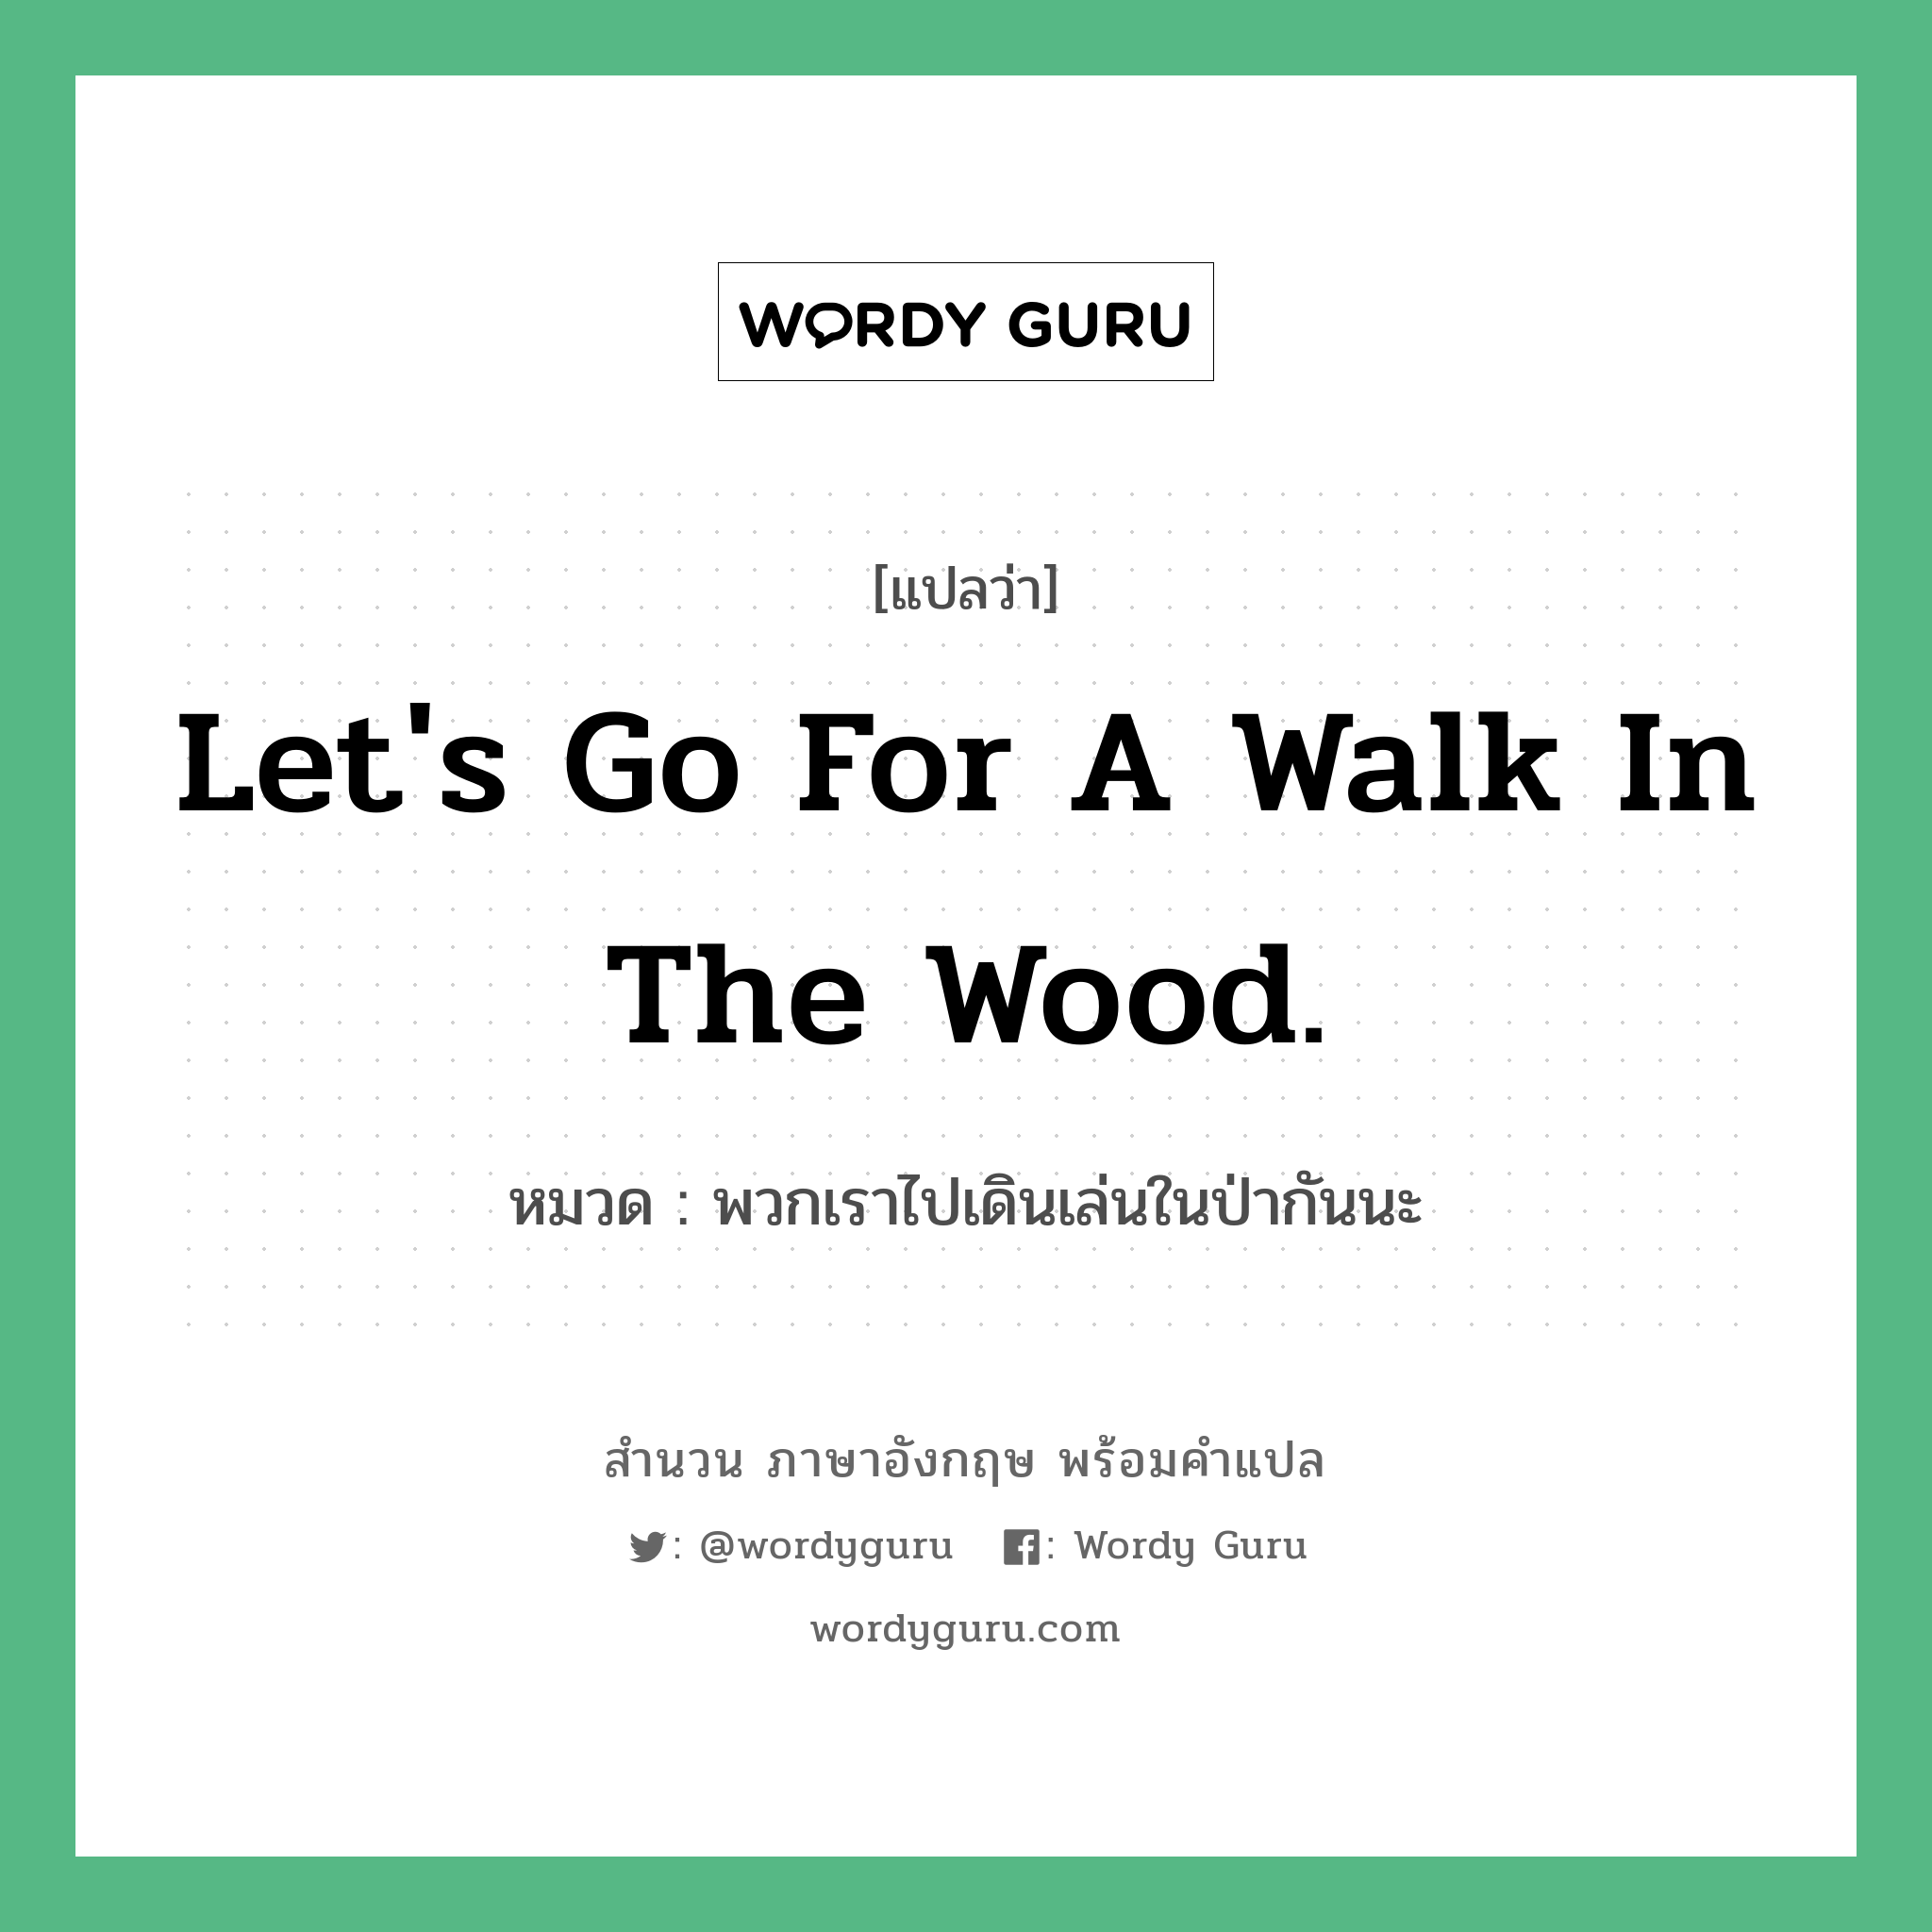 พวกเราไปเดินเล่นในป่ากันนะ ภาษาอังกฤษ?, สำนวนภาษาอังกฤษ พวกเราไปเดินเล่นในป่ากันนะ แปลว่า พวกเราไปเดินเล่นในป่ากันนะ หมวด Let's go for a walk in the wood.